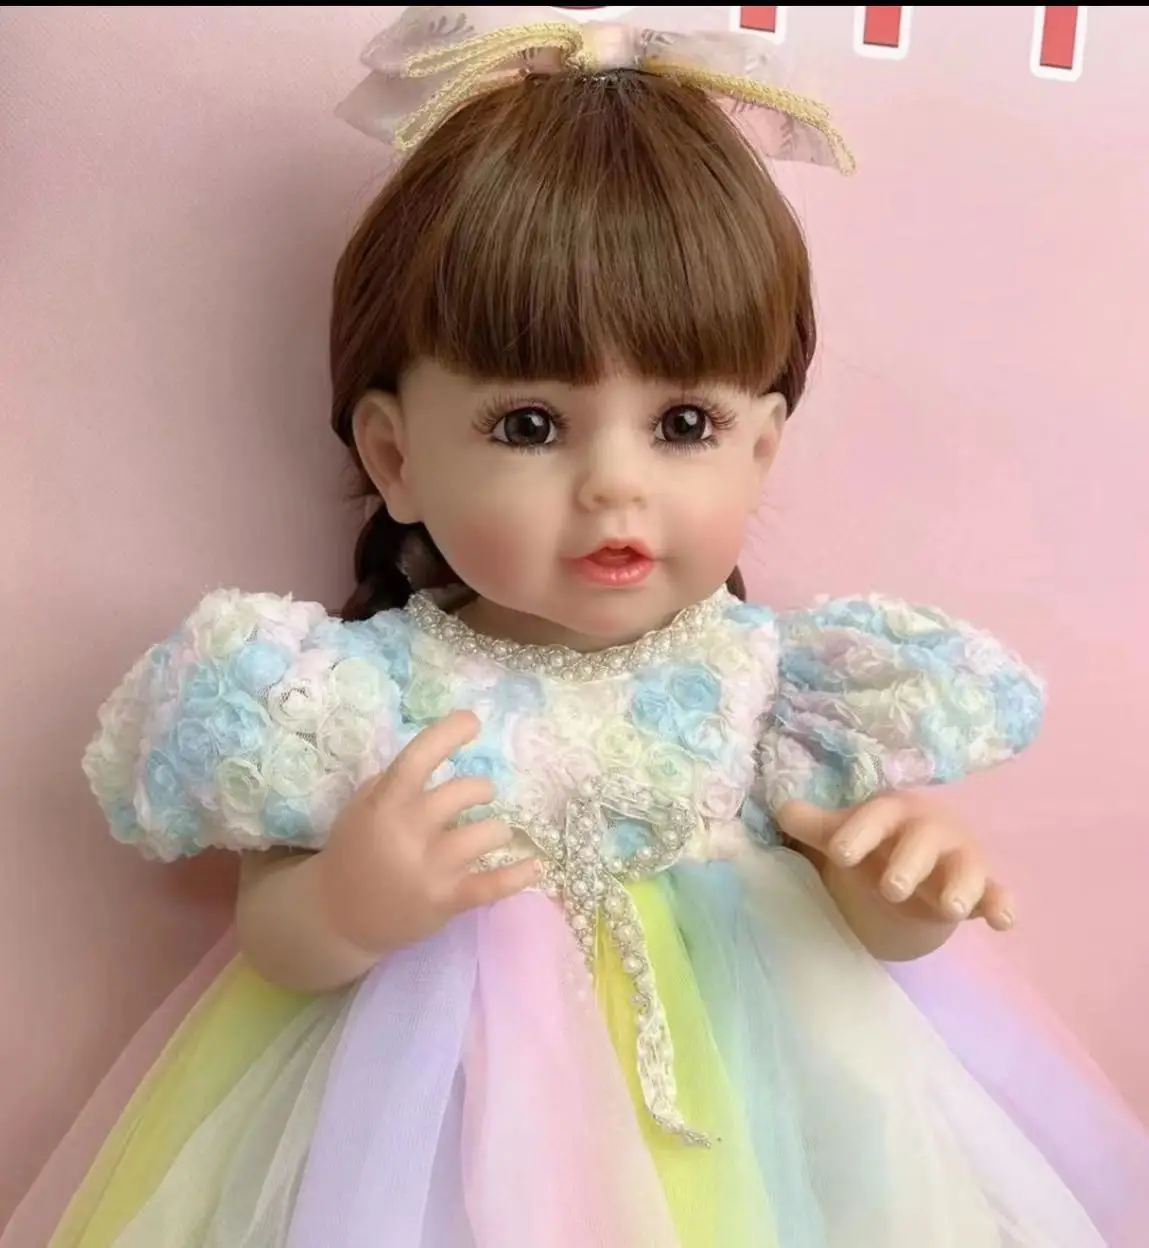 Подлинное Новое Платье Принцессы с длинными волосами, имитация Куклы, игрушка для душа и переодевания, подарок для девочки Изображение 3